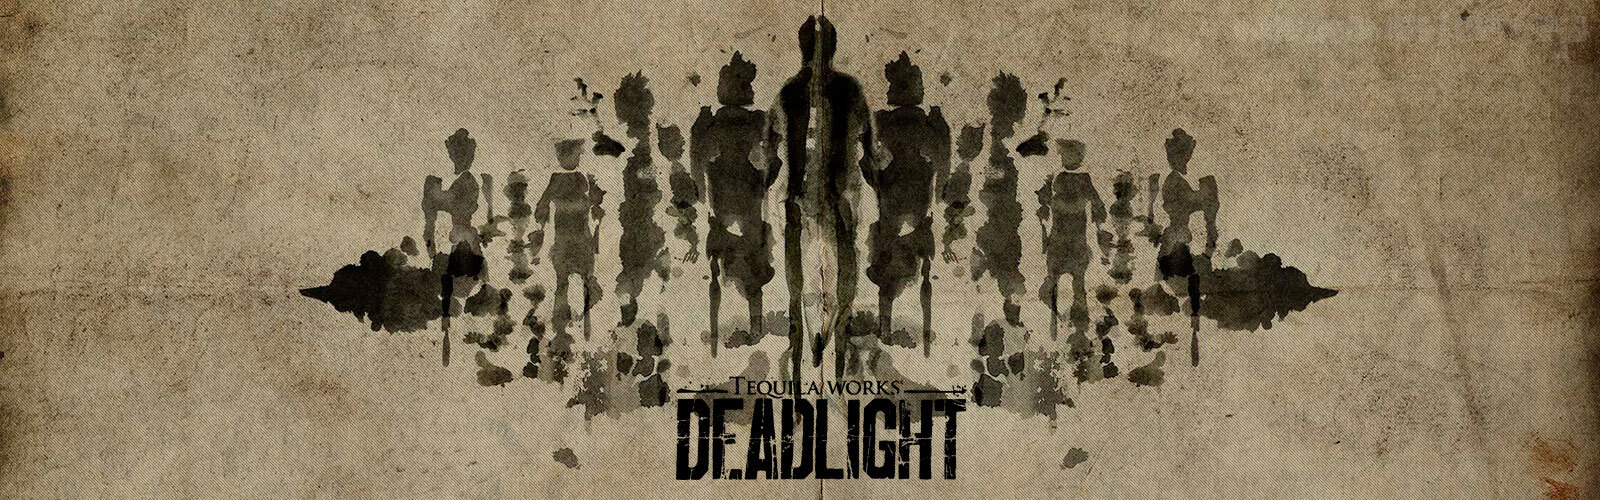 Análise - Deadlight Cover